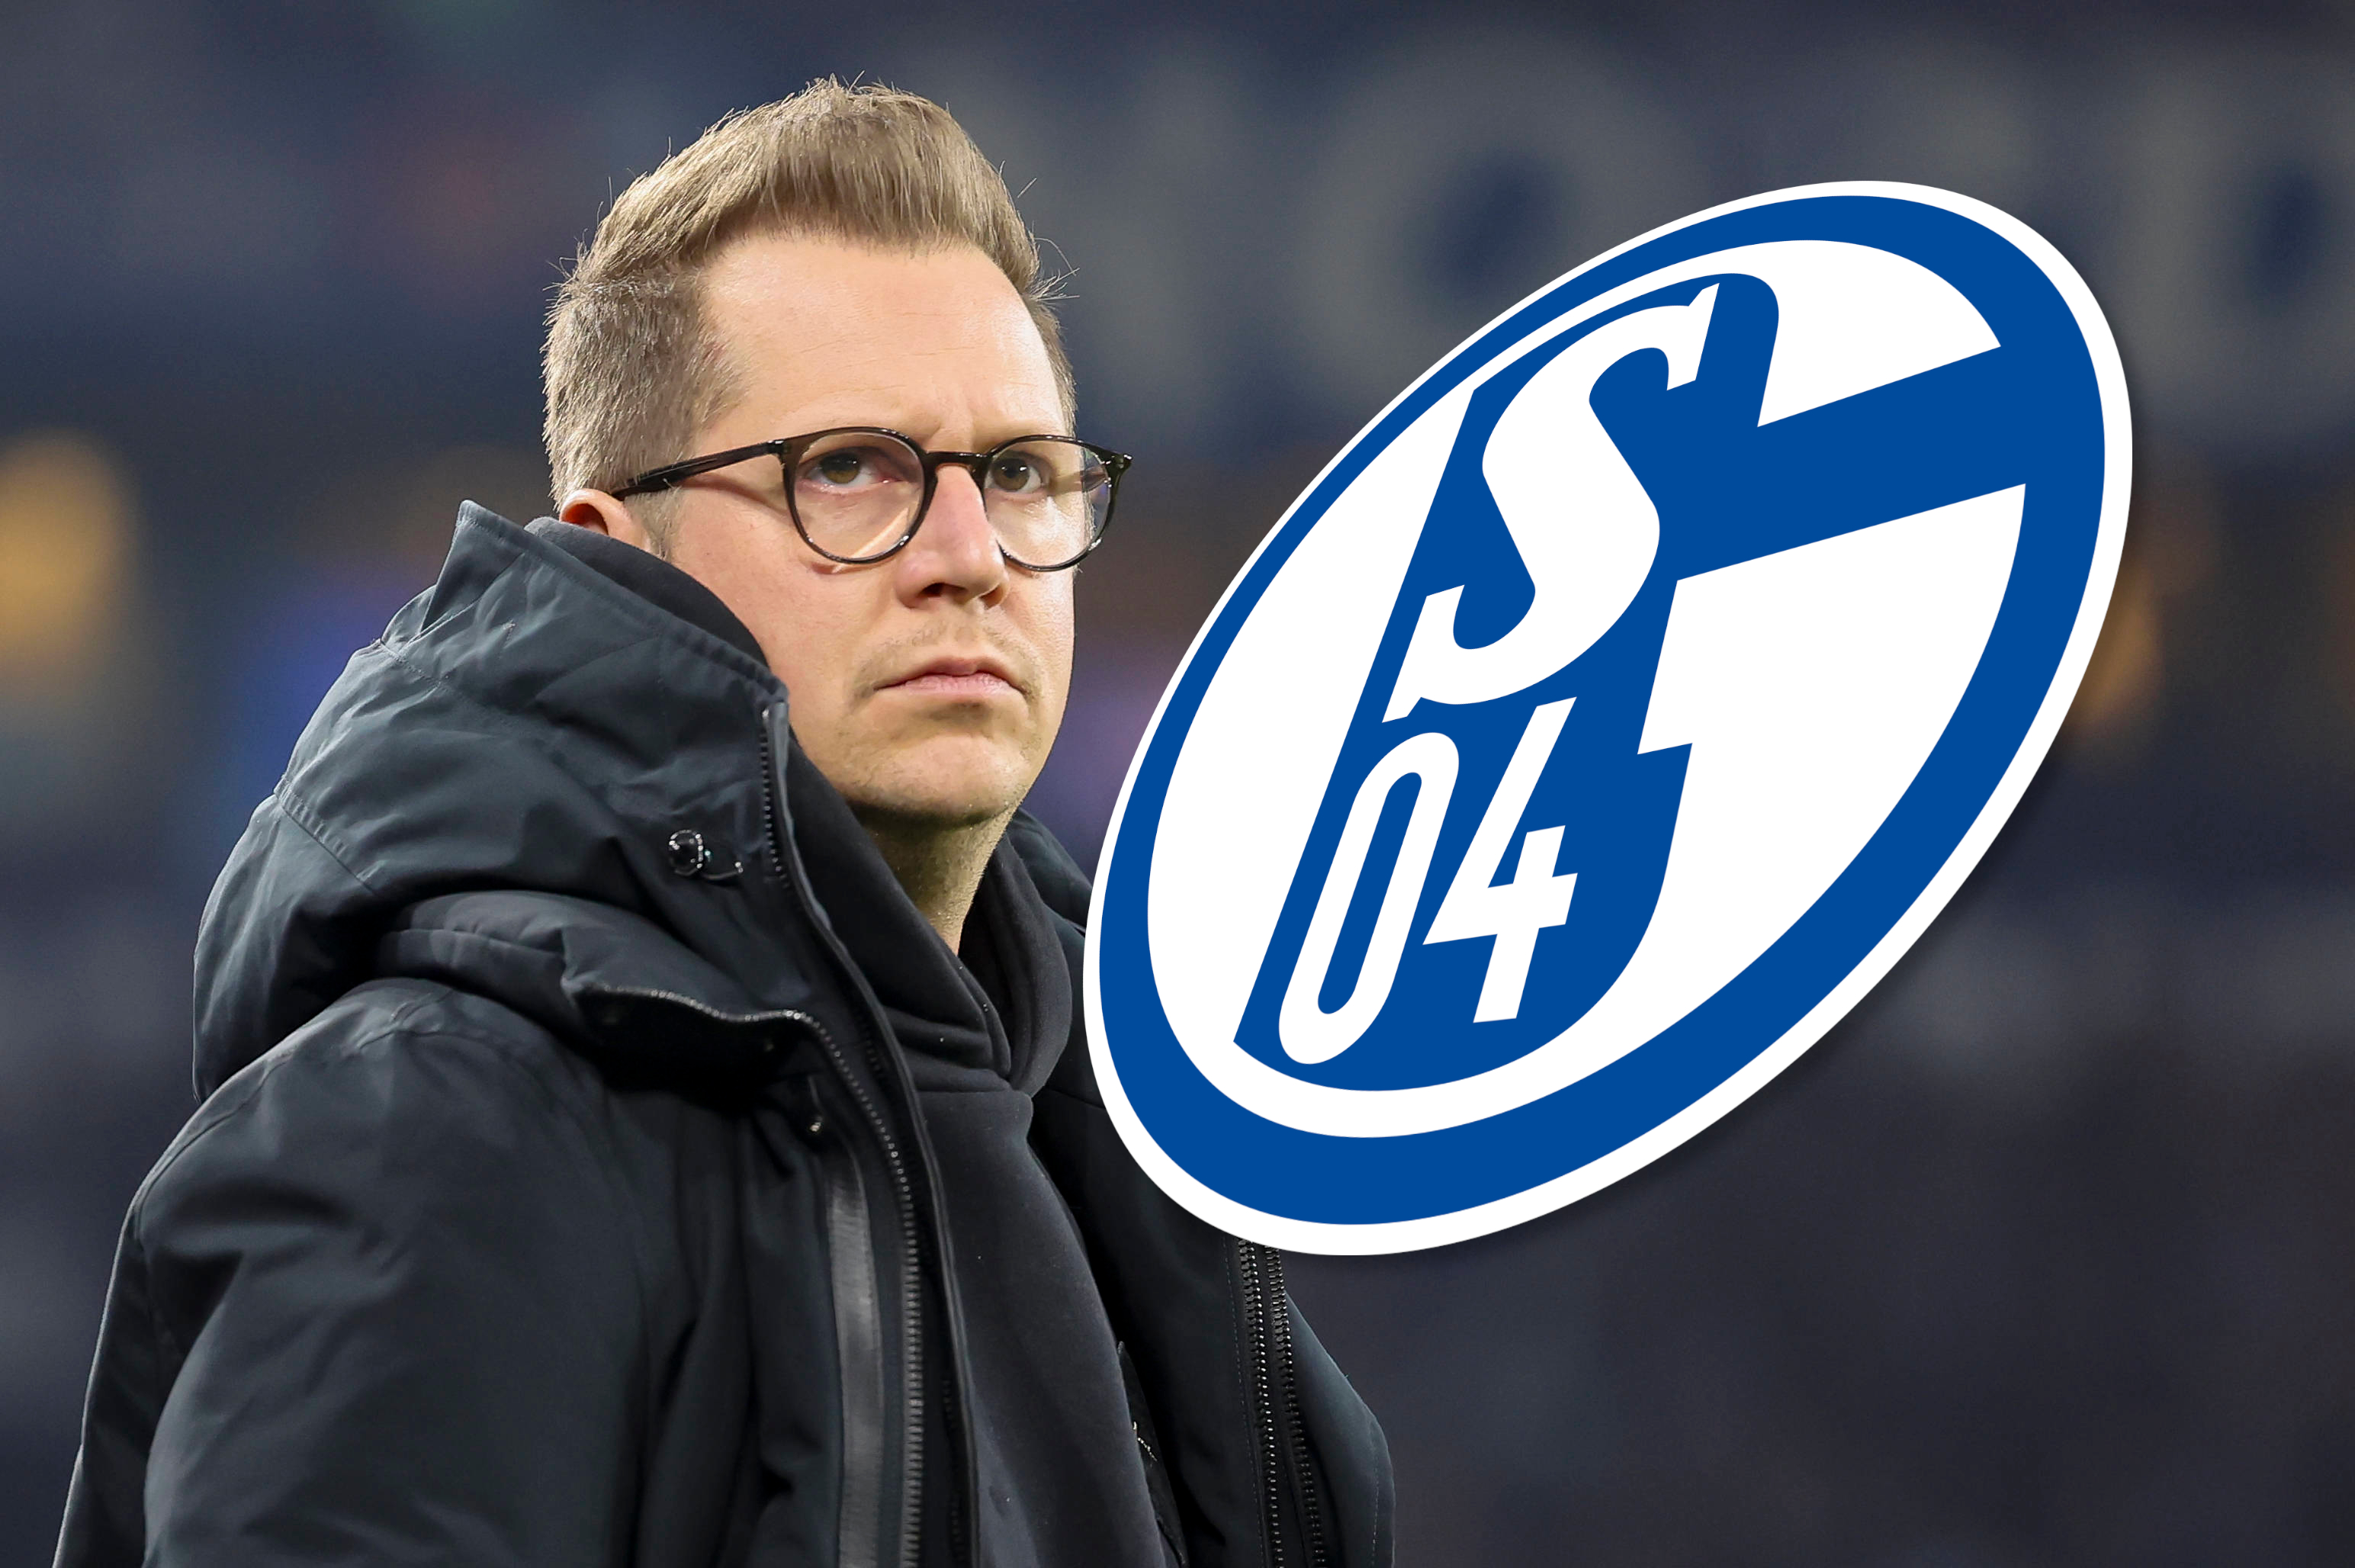 FC Schalke 04: Dealrapport – S04 vóór aankondiging van de transfer